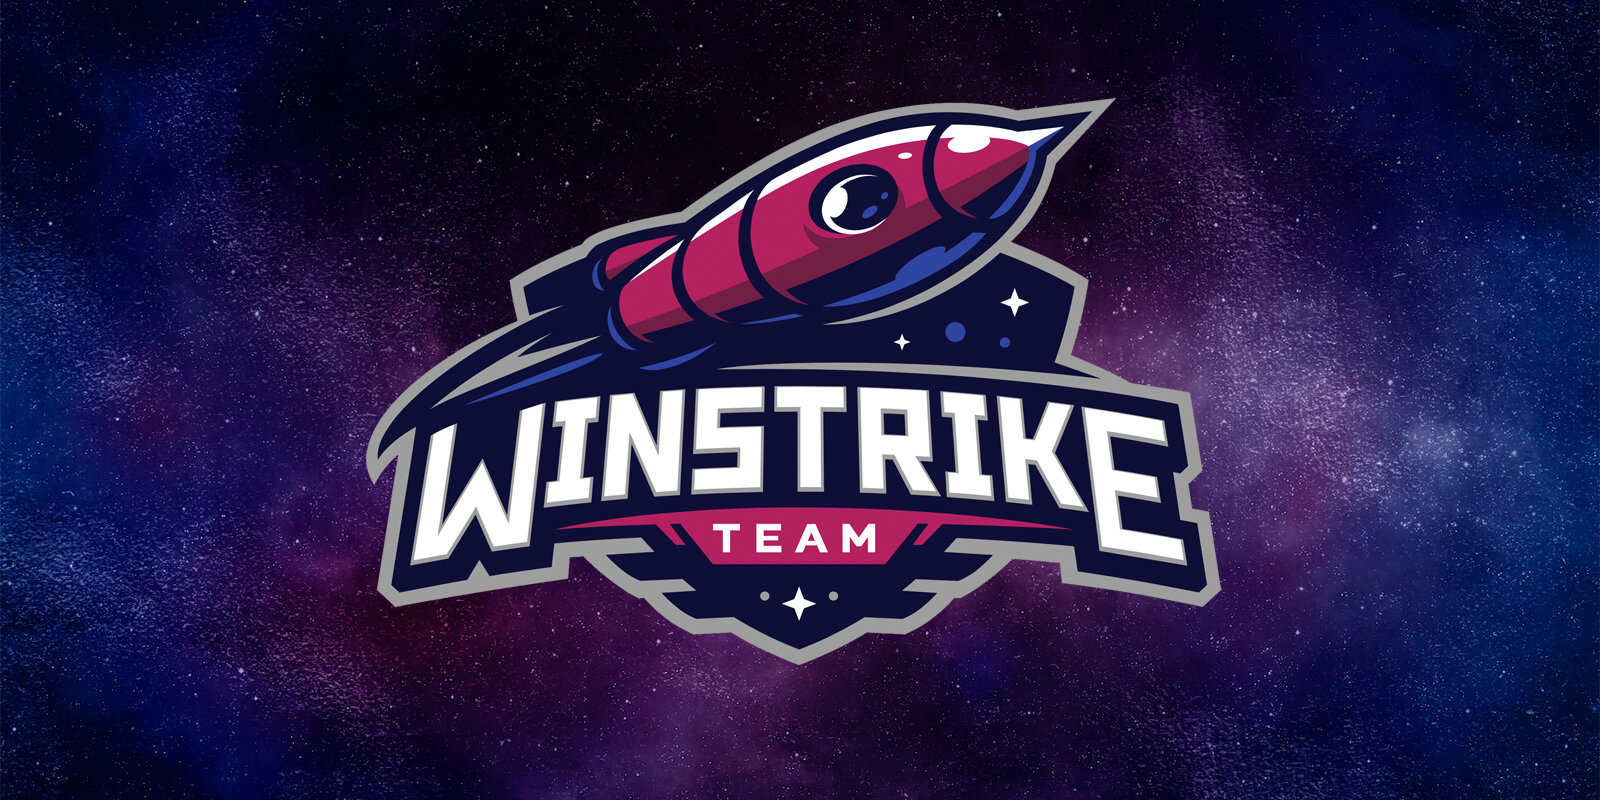 Winstrike по CS:GO: история команды, игроки, особенности ставок